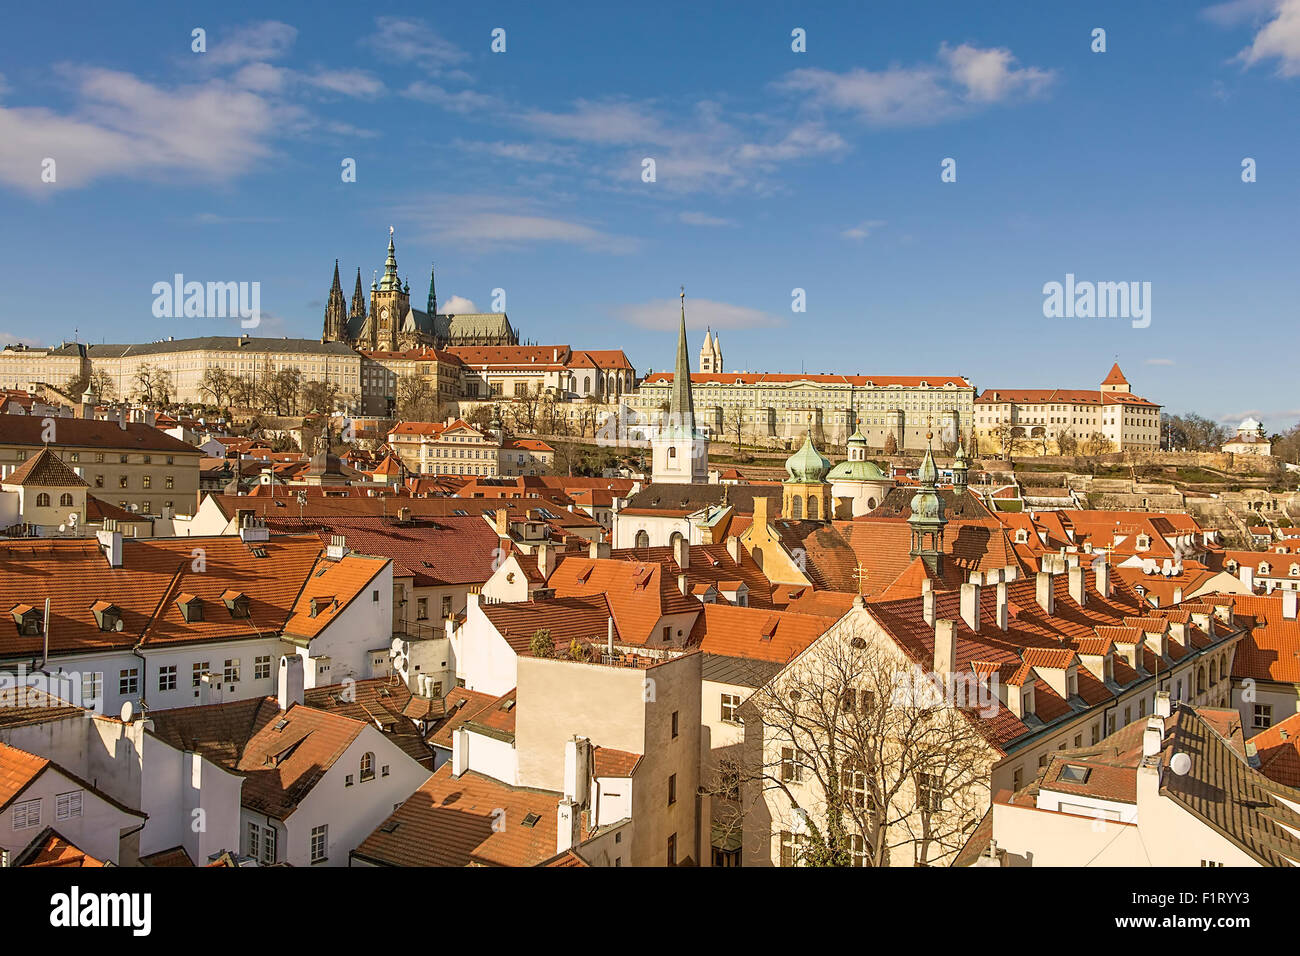 Ver en Praga los tejados y torres con la característica dominante del Castillo de Praga y de la catedral. Foto de stock